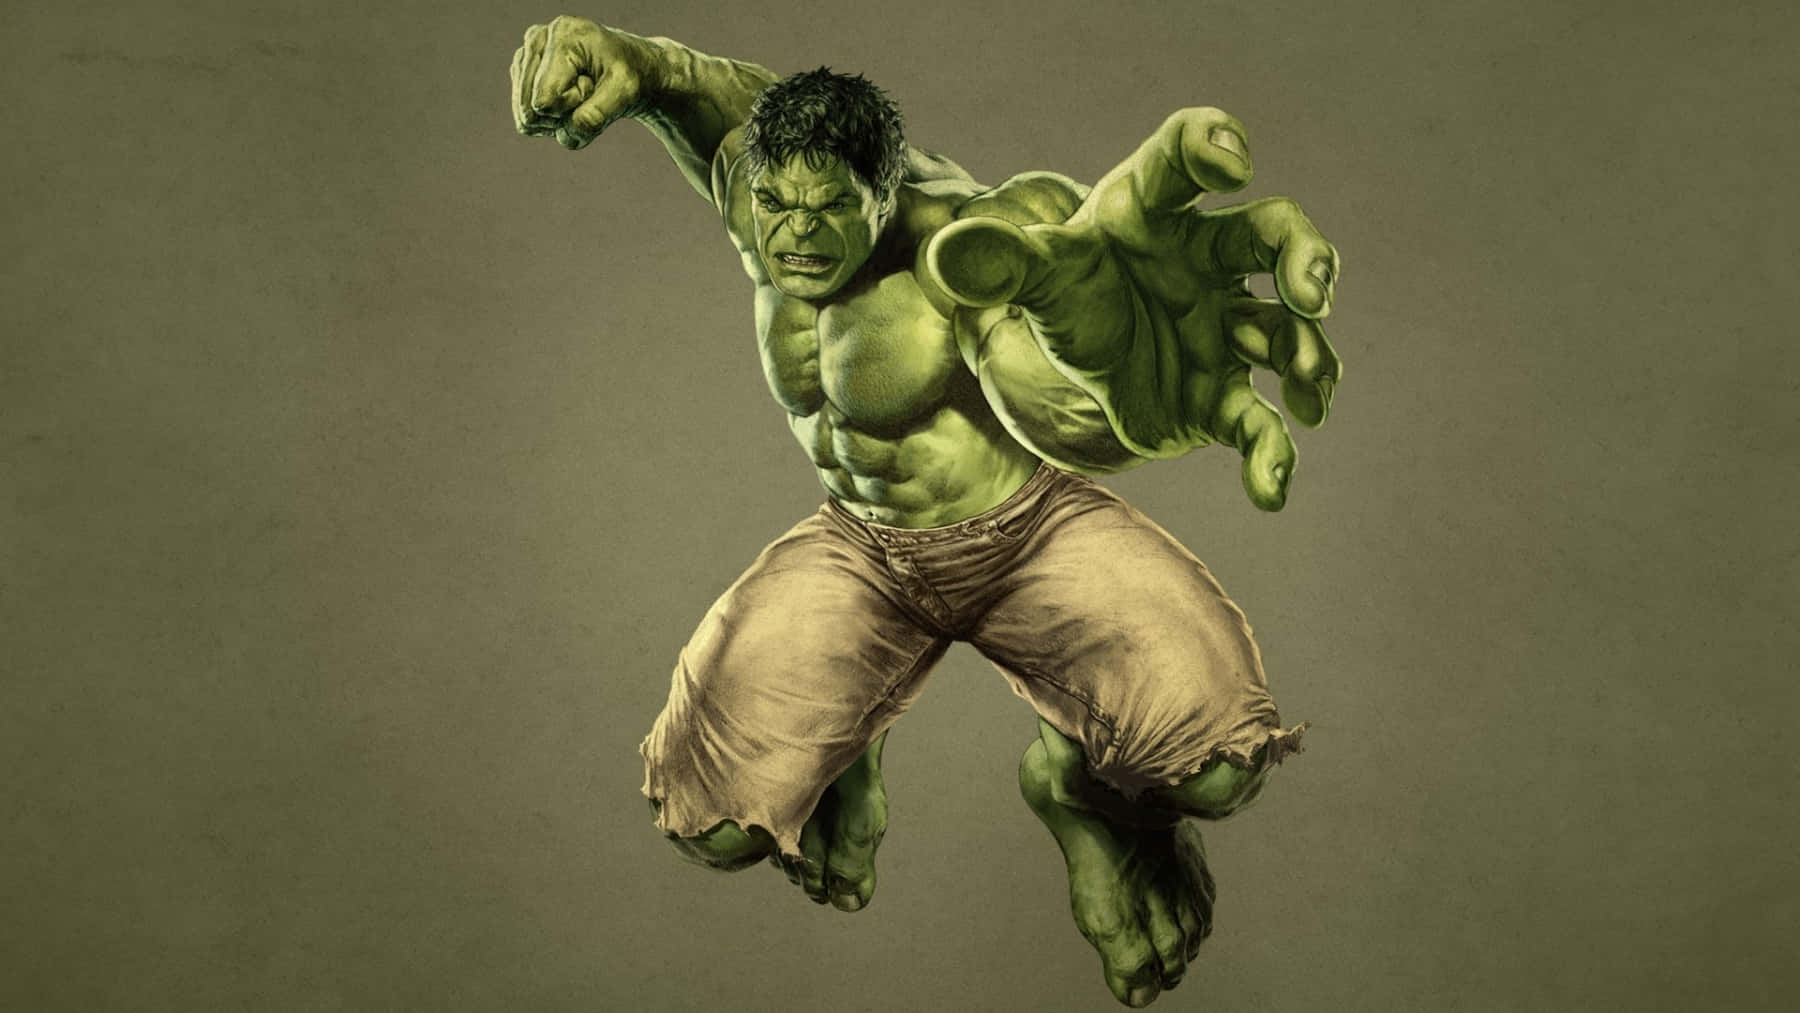 Mitreißendekunst Des Wütenden Grünen Riesen, Hulk.